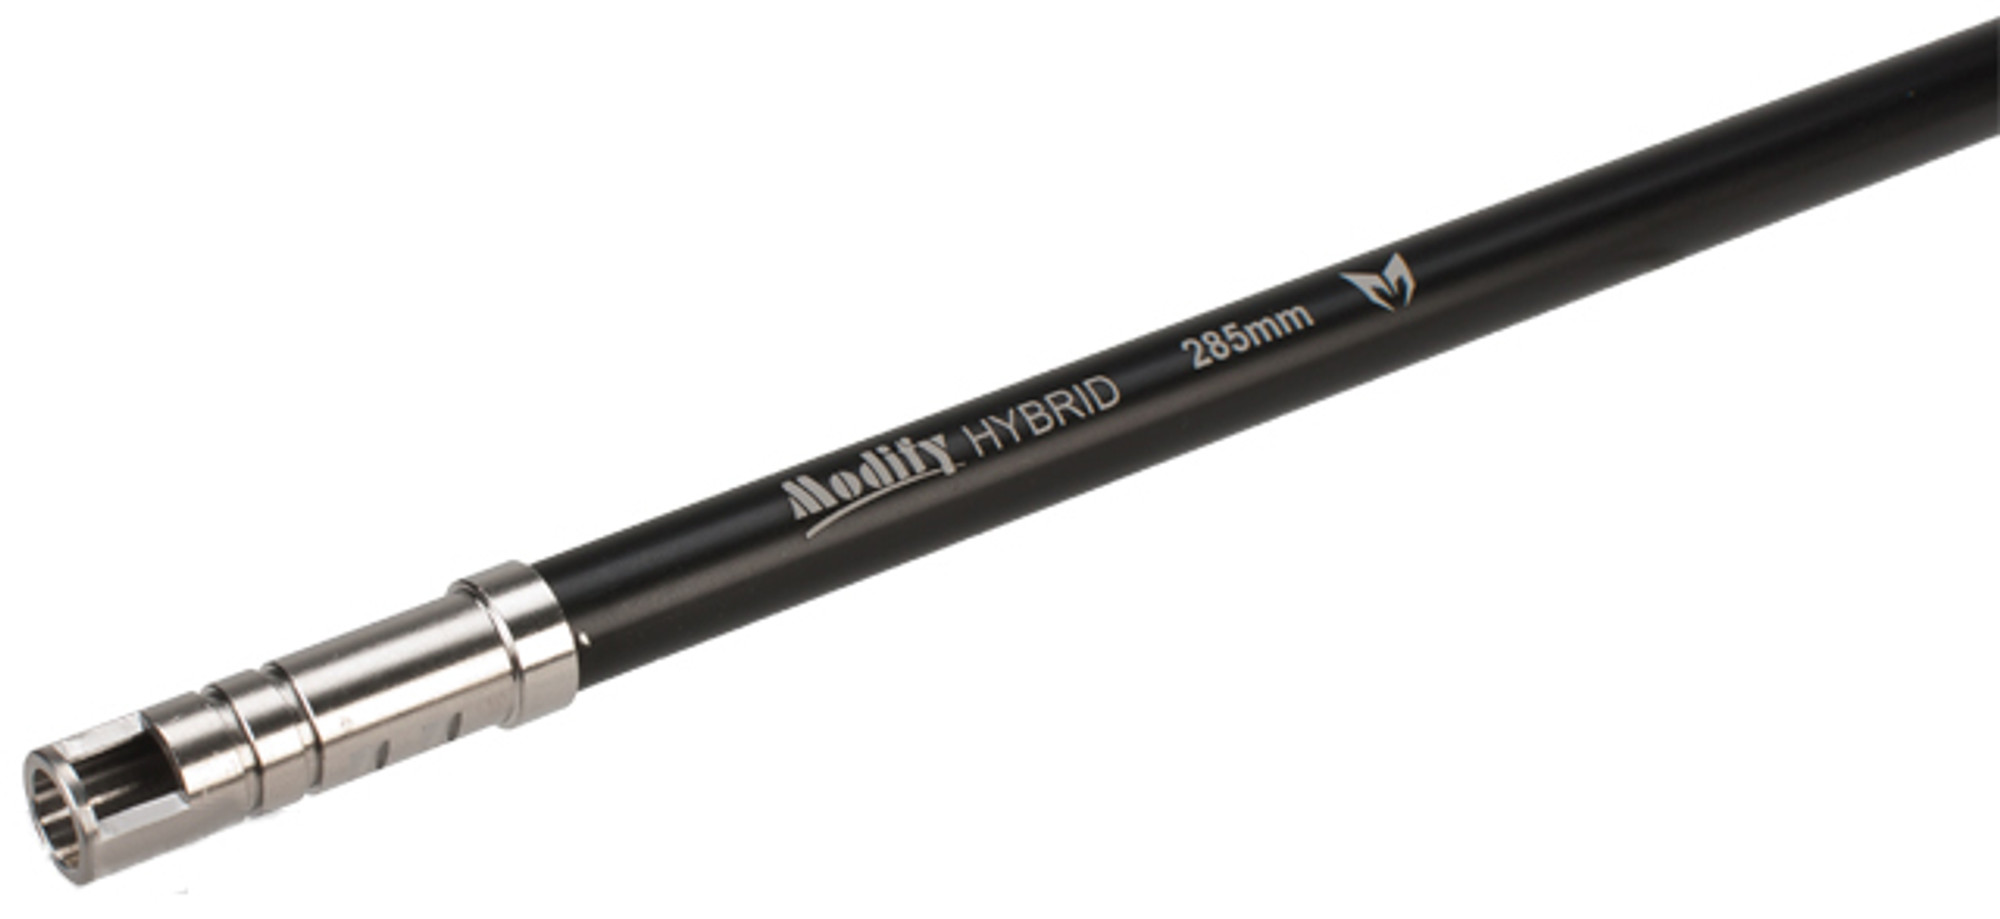 Modify "SS+AL" Hybrid 6.03mm Precision AEG Inner Barrel - 285mm